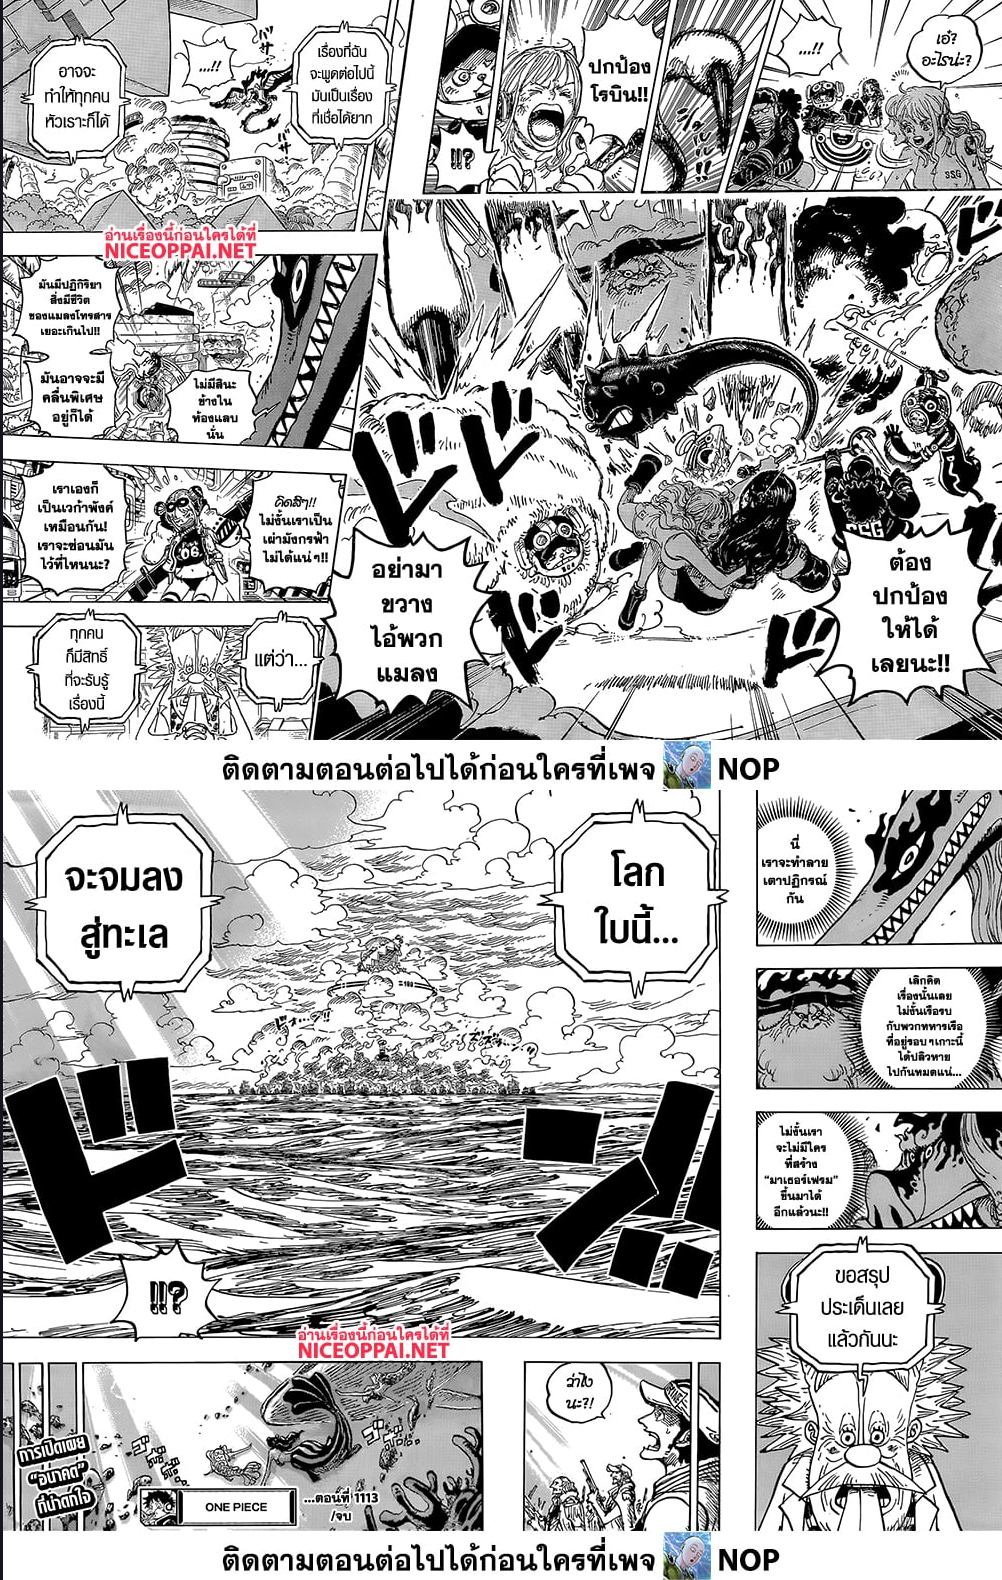 One Piece à¸•à¸­à¸™à¸—à¸µà¹ˆ 1113 (9)